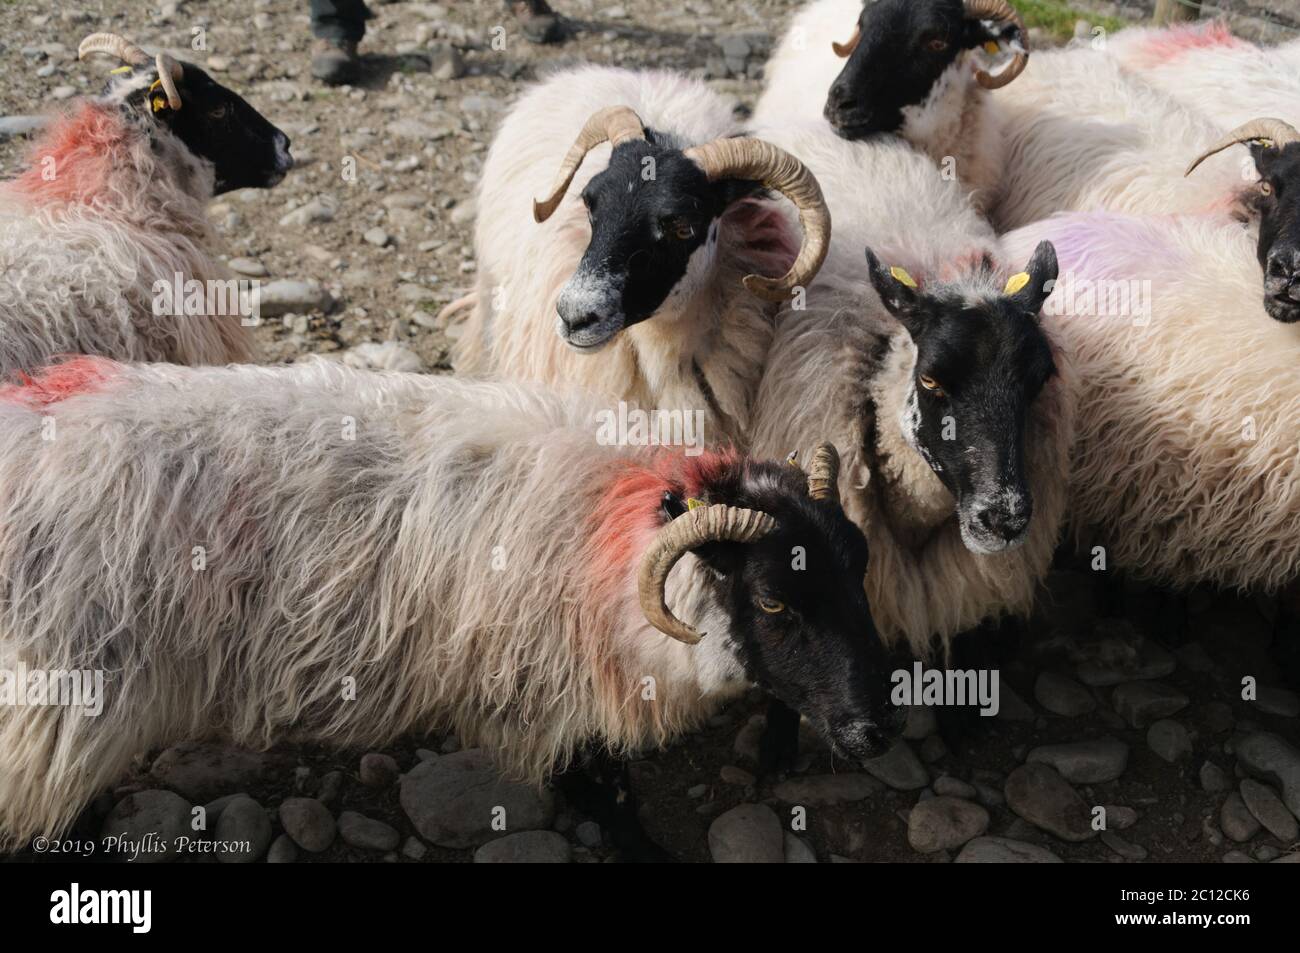 Cueillette de moutons dans une ferme de moutons en Irlande. Photo de haute qualité Banque D'Images